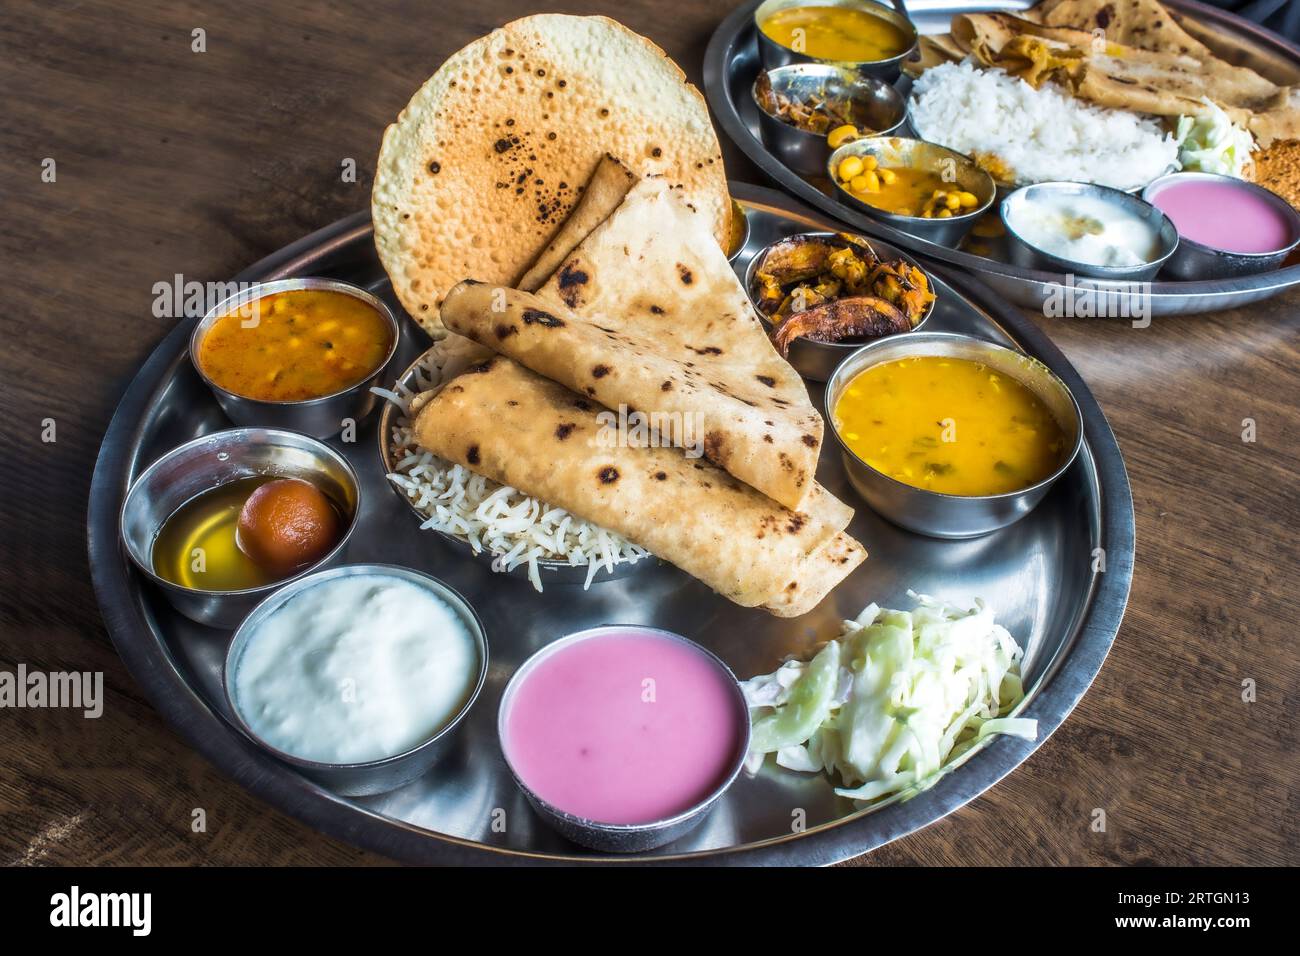 Gesunder und leckerer indischer vegetarischer Teller zum Mittag- und Abendessen mit einer großen Auswahl an appetitlichen vegetarischen Gerichten und süßen Gerichten, die Ihren Geschmack verzaubern Stockfoto